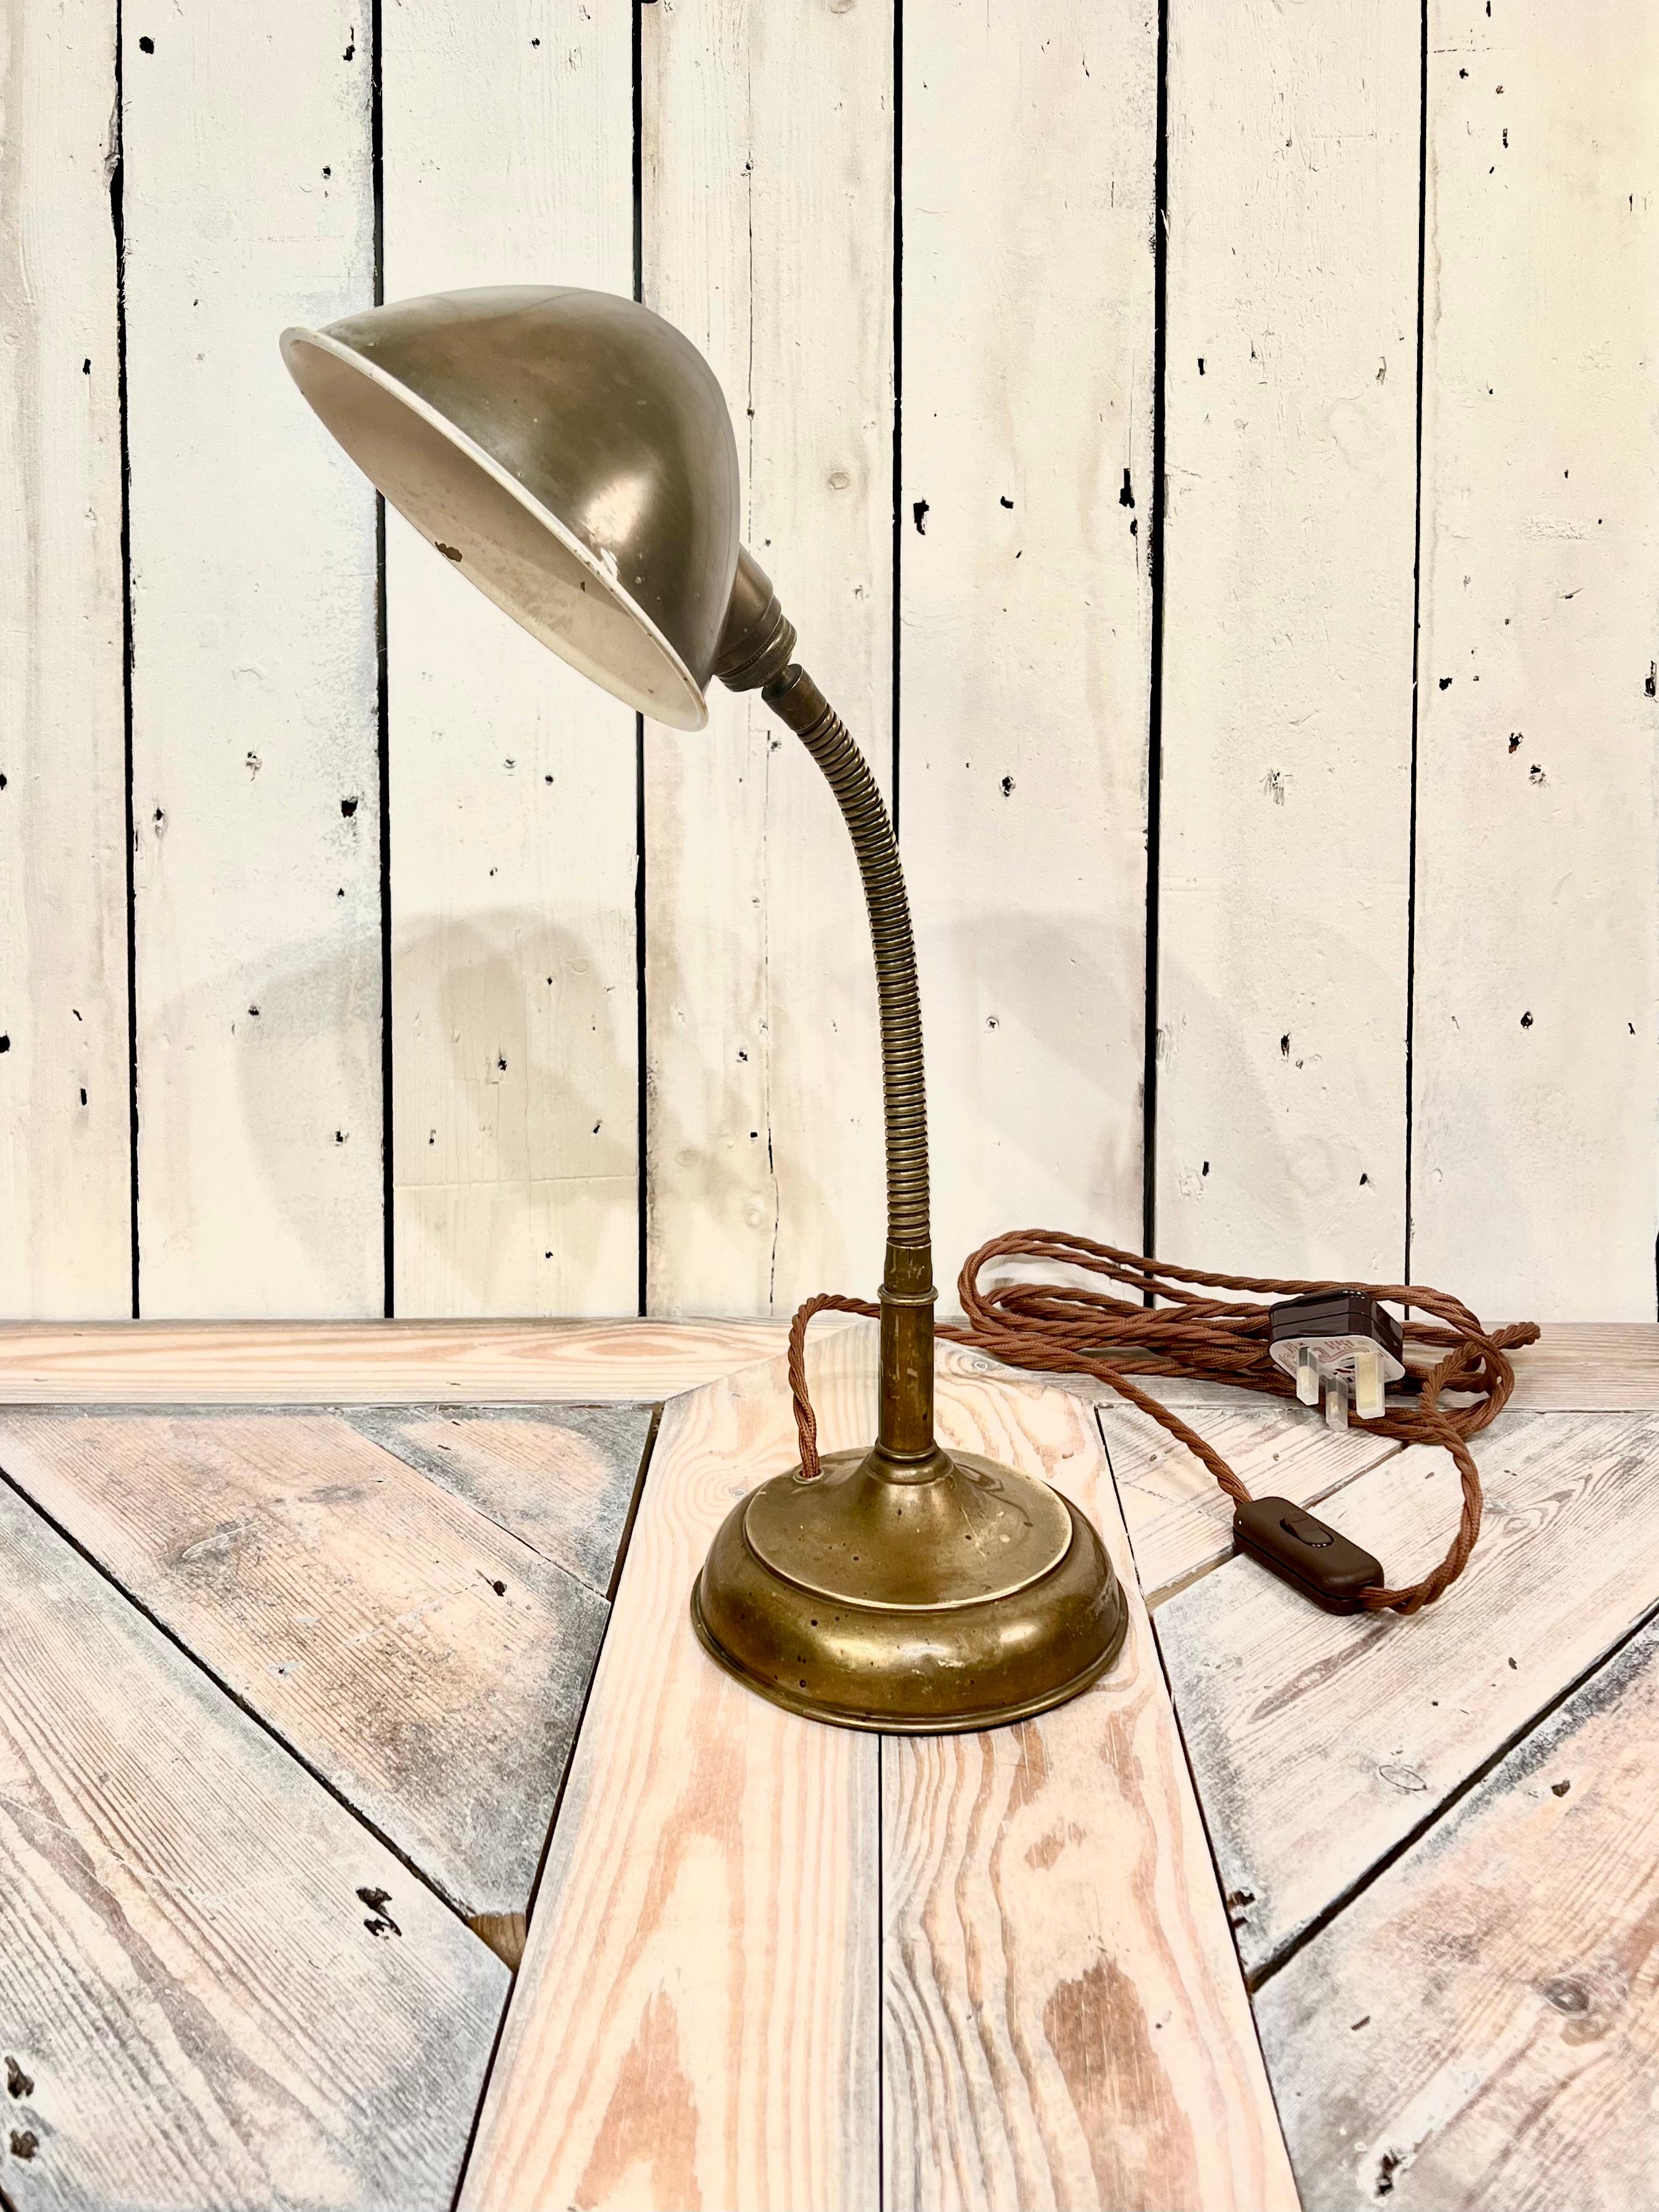 Cette magnifique lampe de table Miller en laiton des années 1920, modèle (1091), est une véritable pièce de collection pour le collectionneur le plus exigeant. Fabriquée aux États-Unis, cette lampe présente une magnifique finition en laiton qui